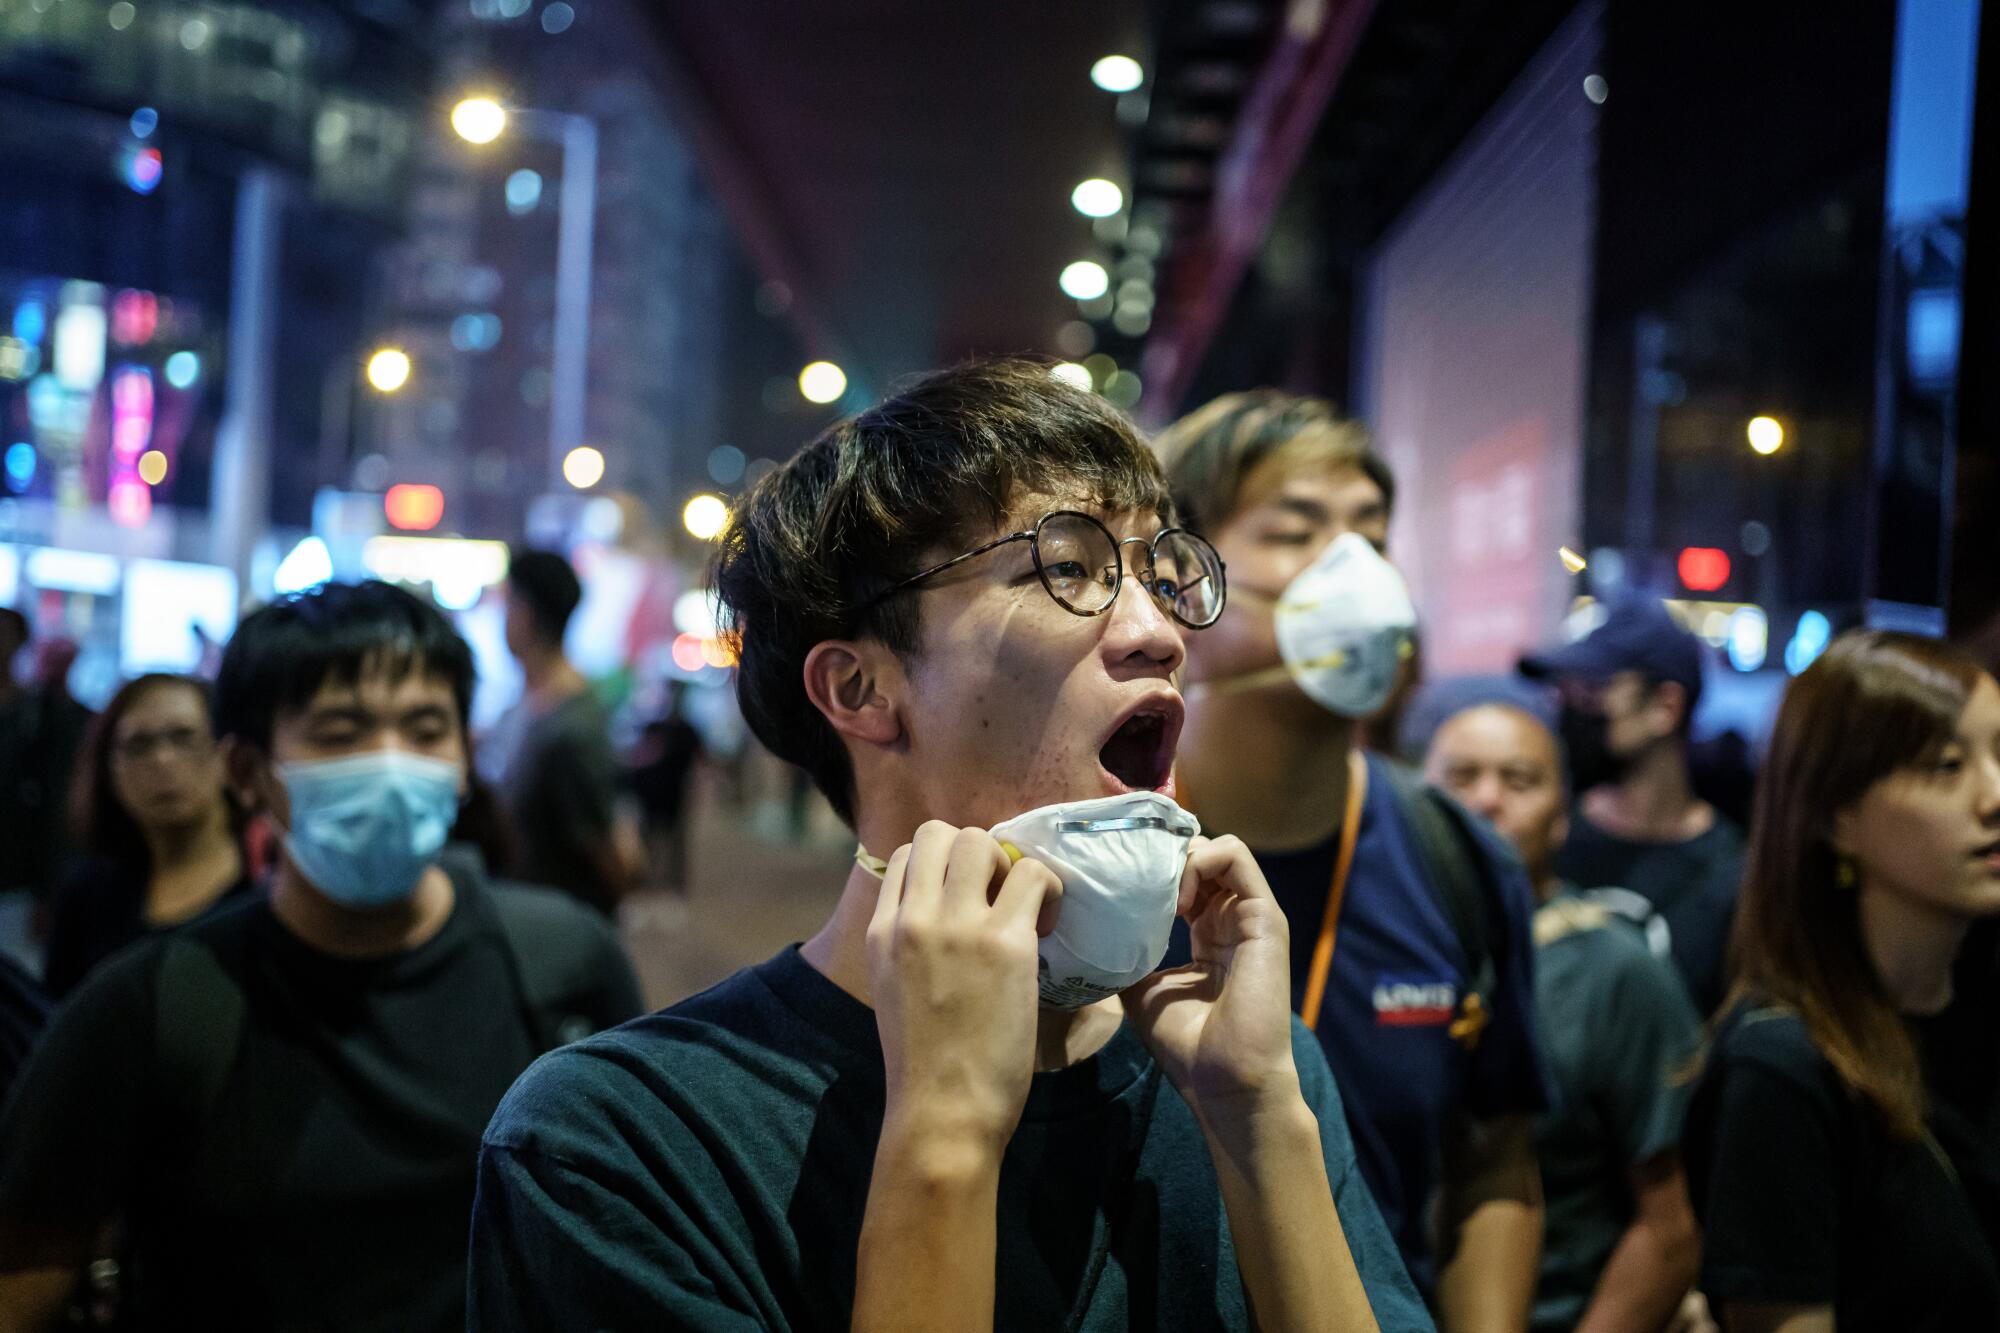 Boyz Reborn vocalist Ben Chan at a protest near Mong Kok, in Hong Kong.